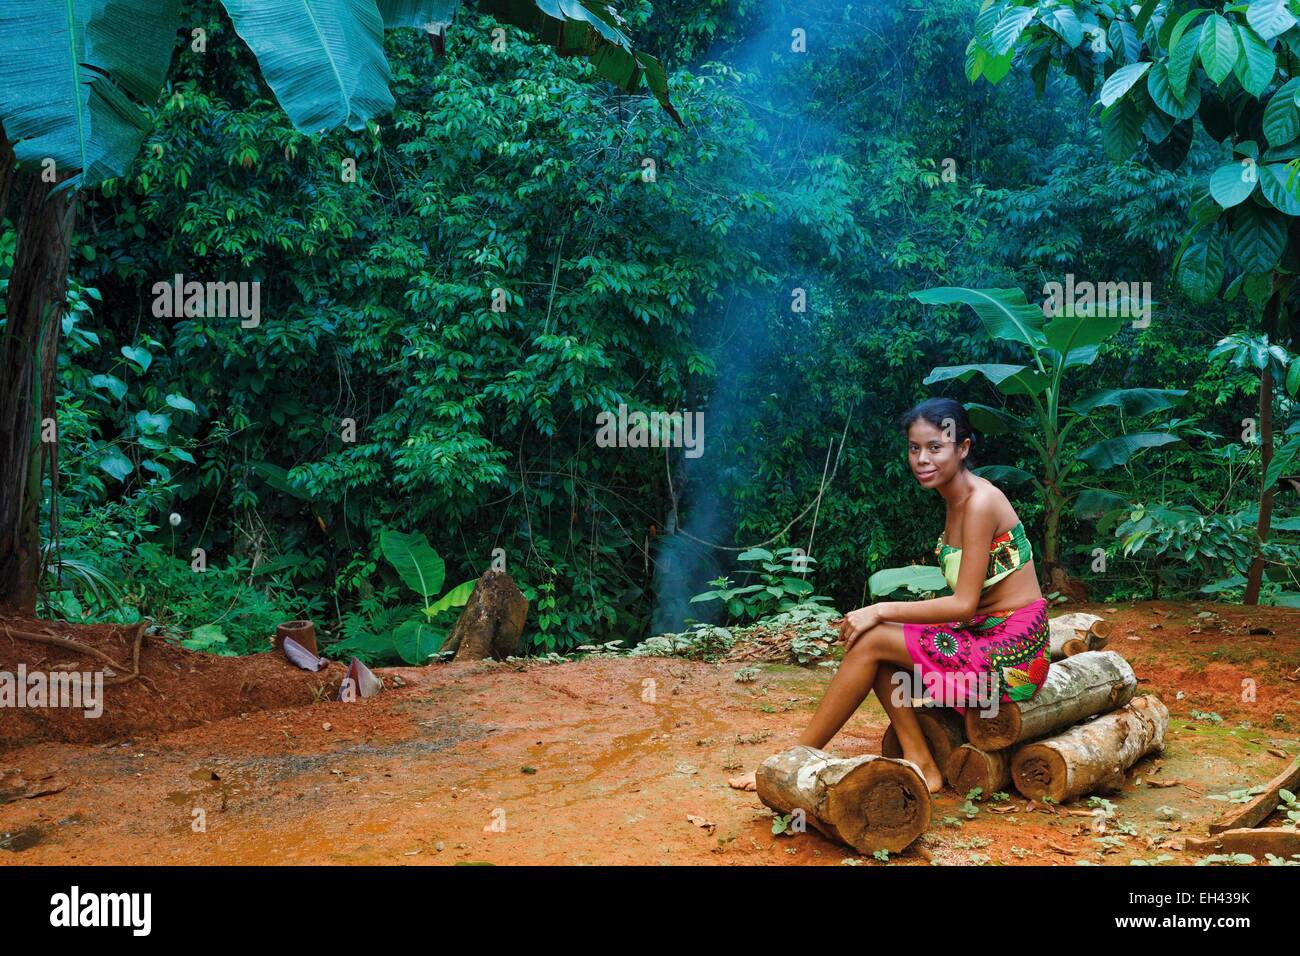 Panama, provincia di Darien, Parco Nazionale del Darién, classificato come patrimonio mondiale dall UNESCO, Embera comunità indigena, ritratto di una giovane ragazza nativa Embera in una lussureggiante vegetazione tropicale Foto Stock